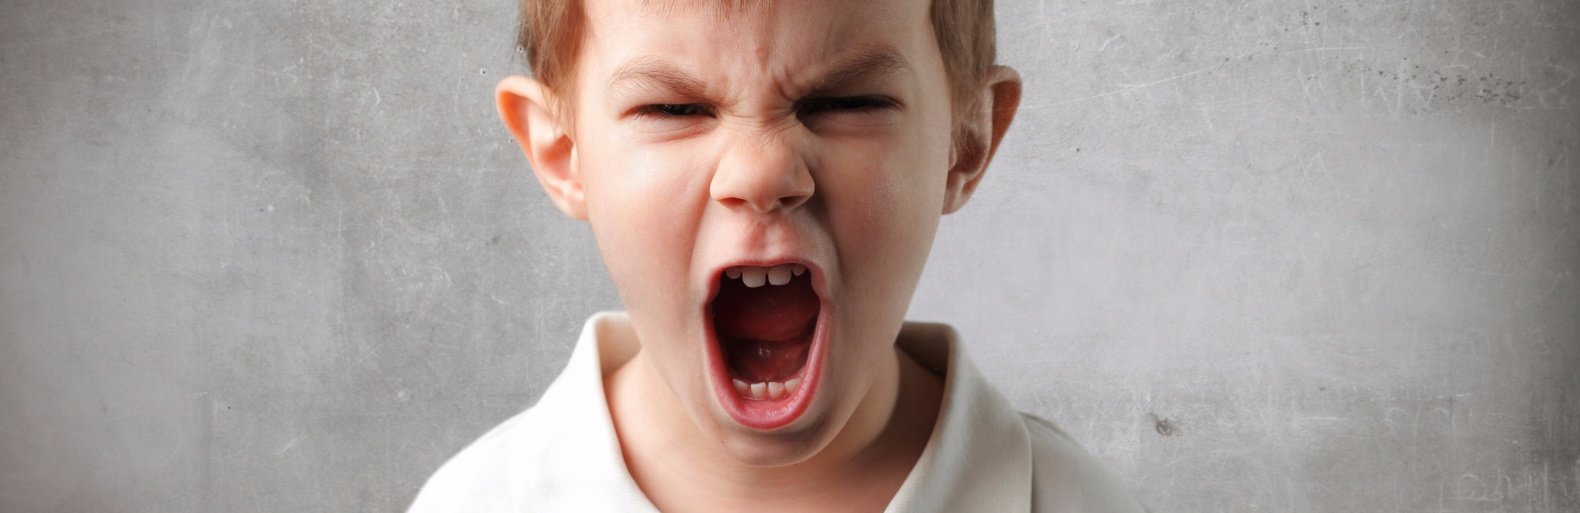 Как реагировать на истерики и крики ребенка? Советы психолога